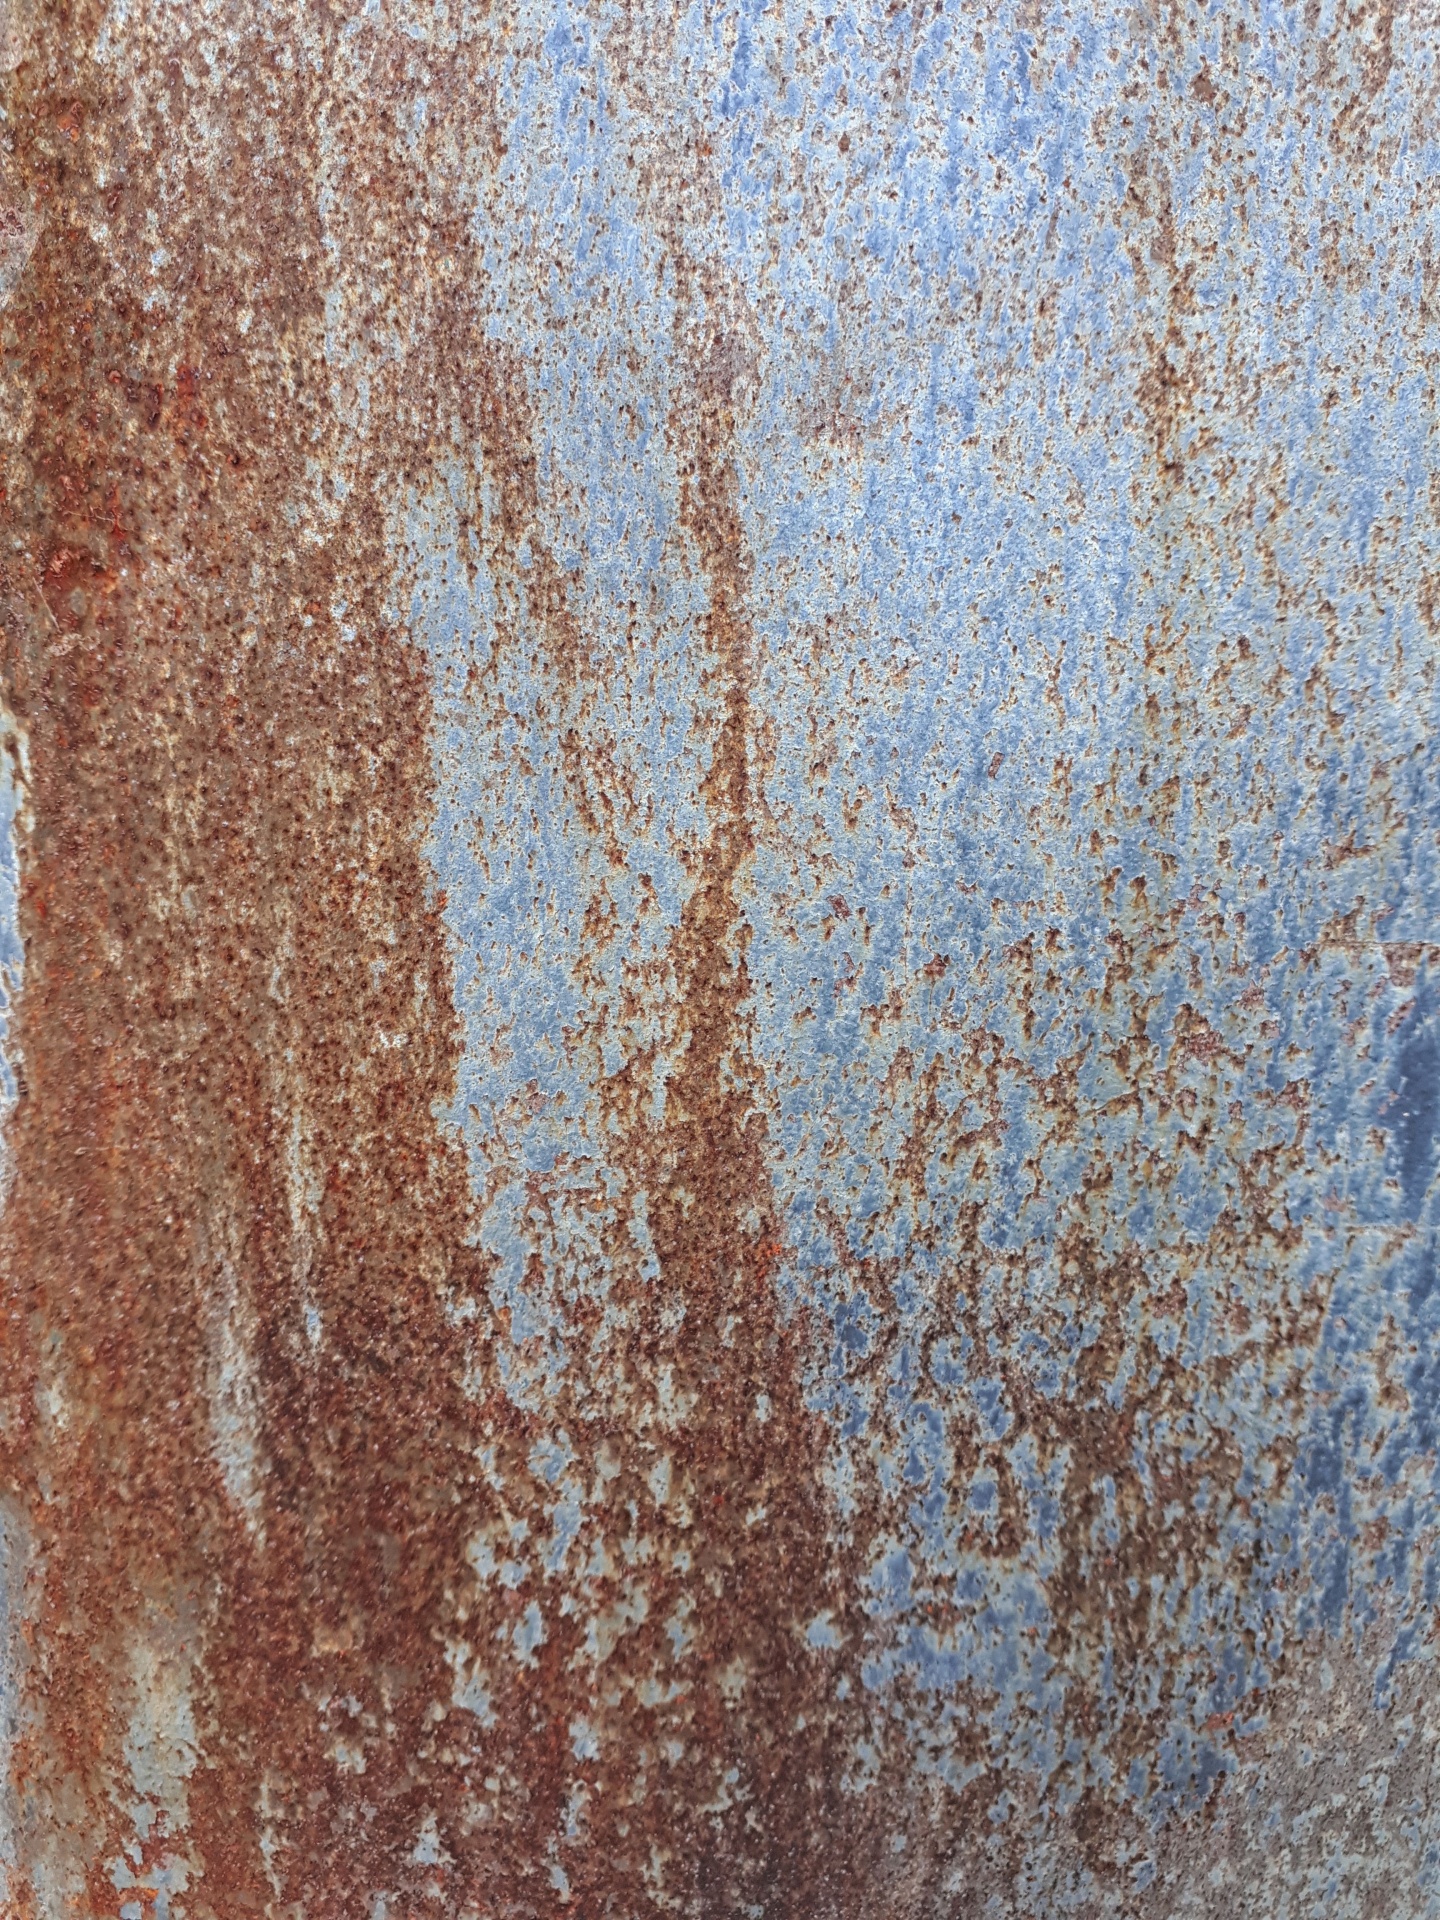 Placa de metal oxidada